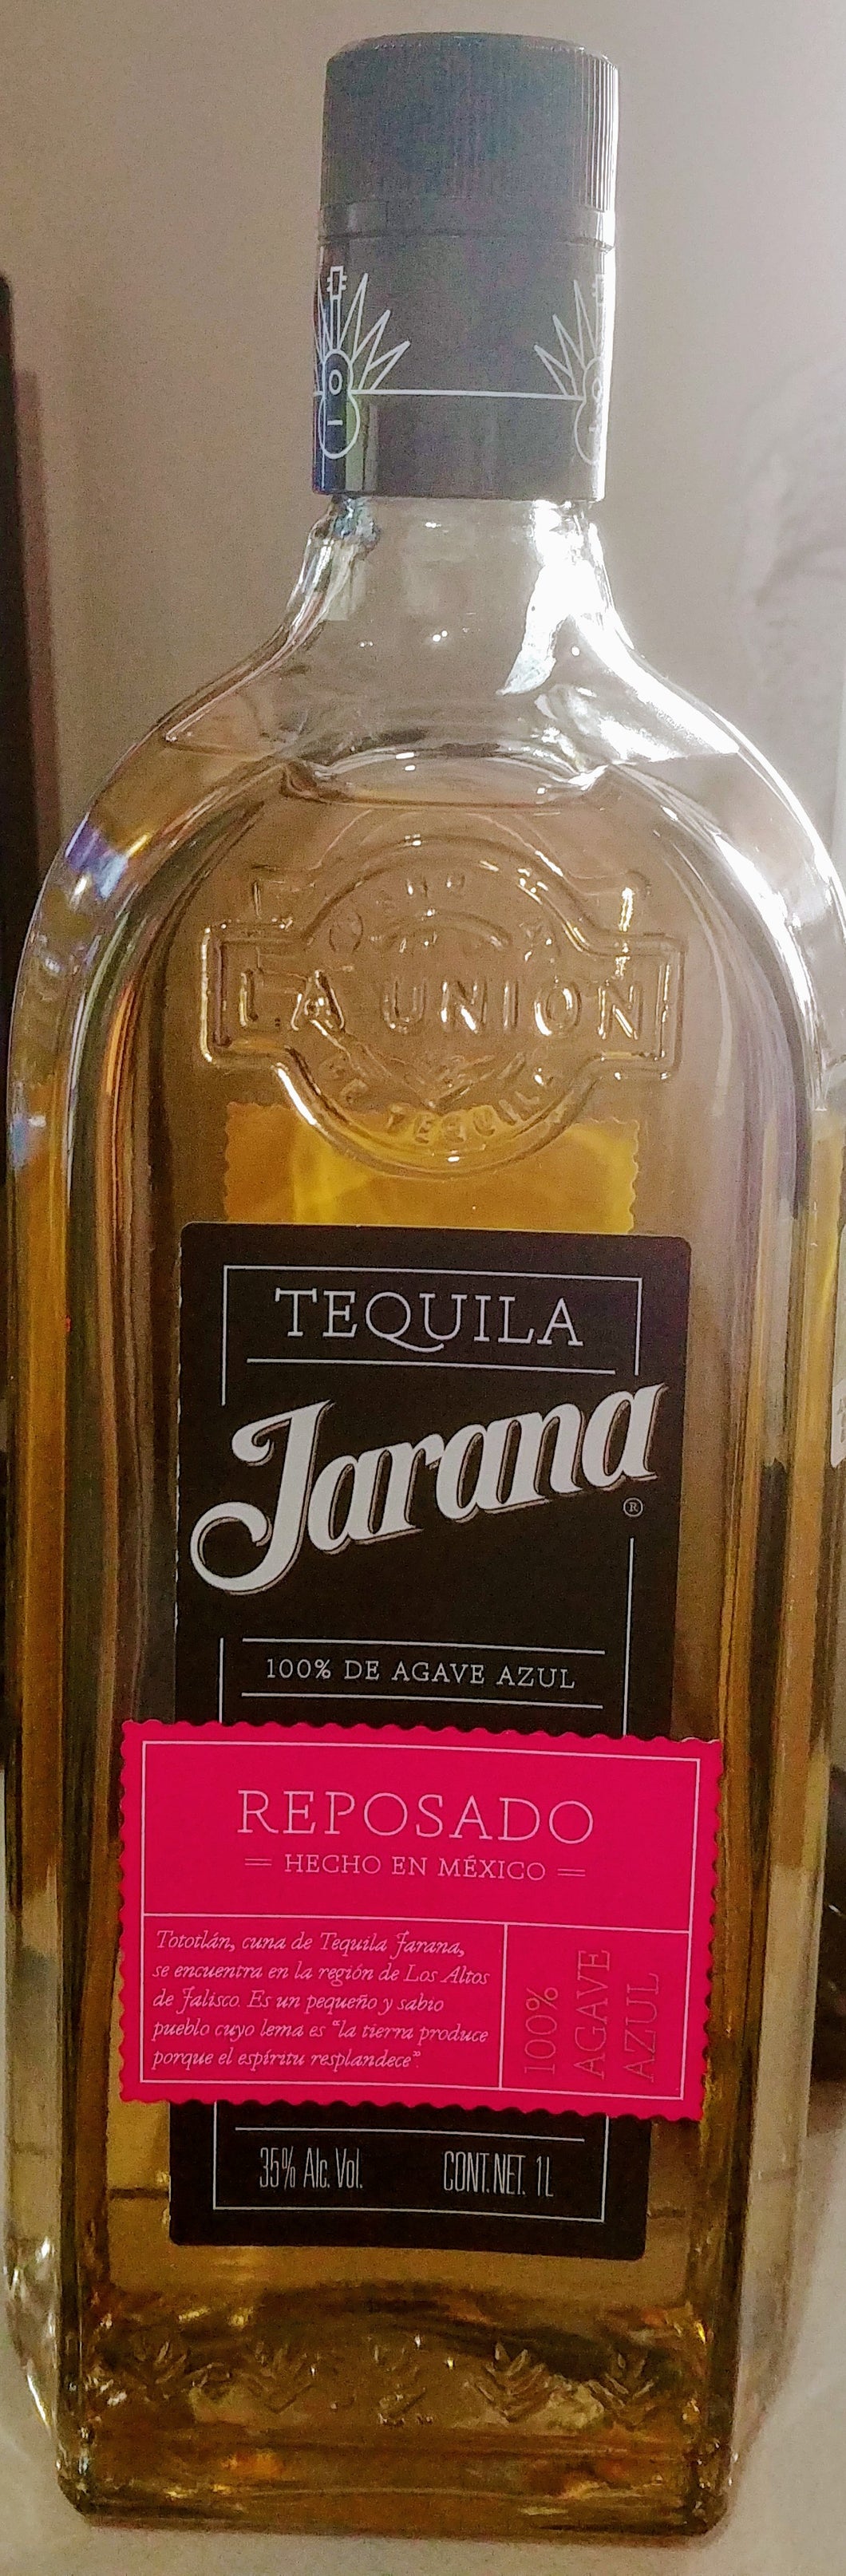 Tequila Jarana 1Lt